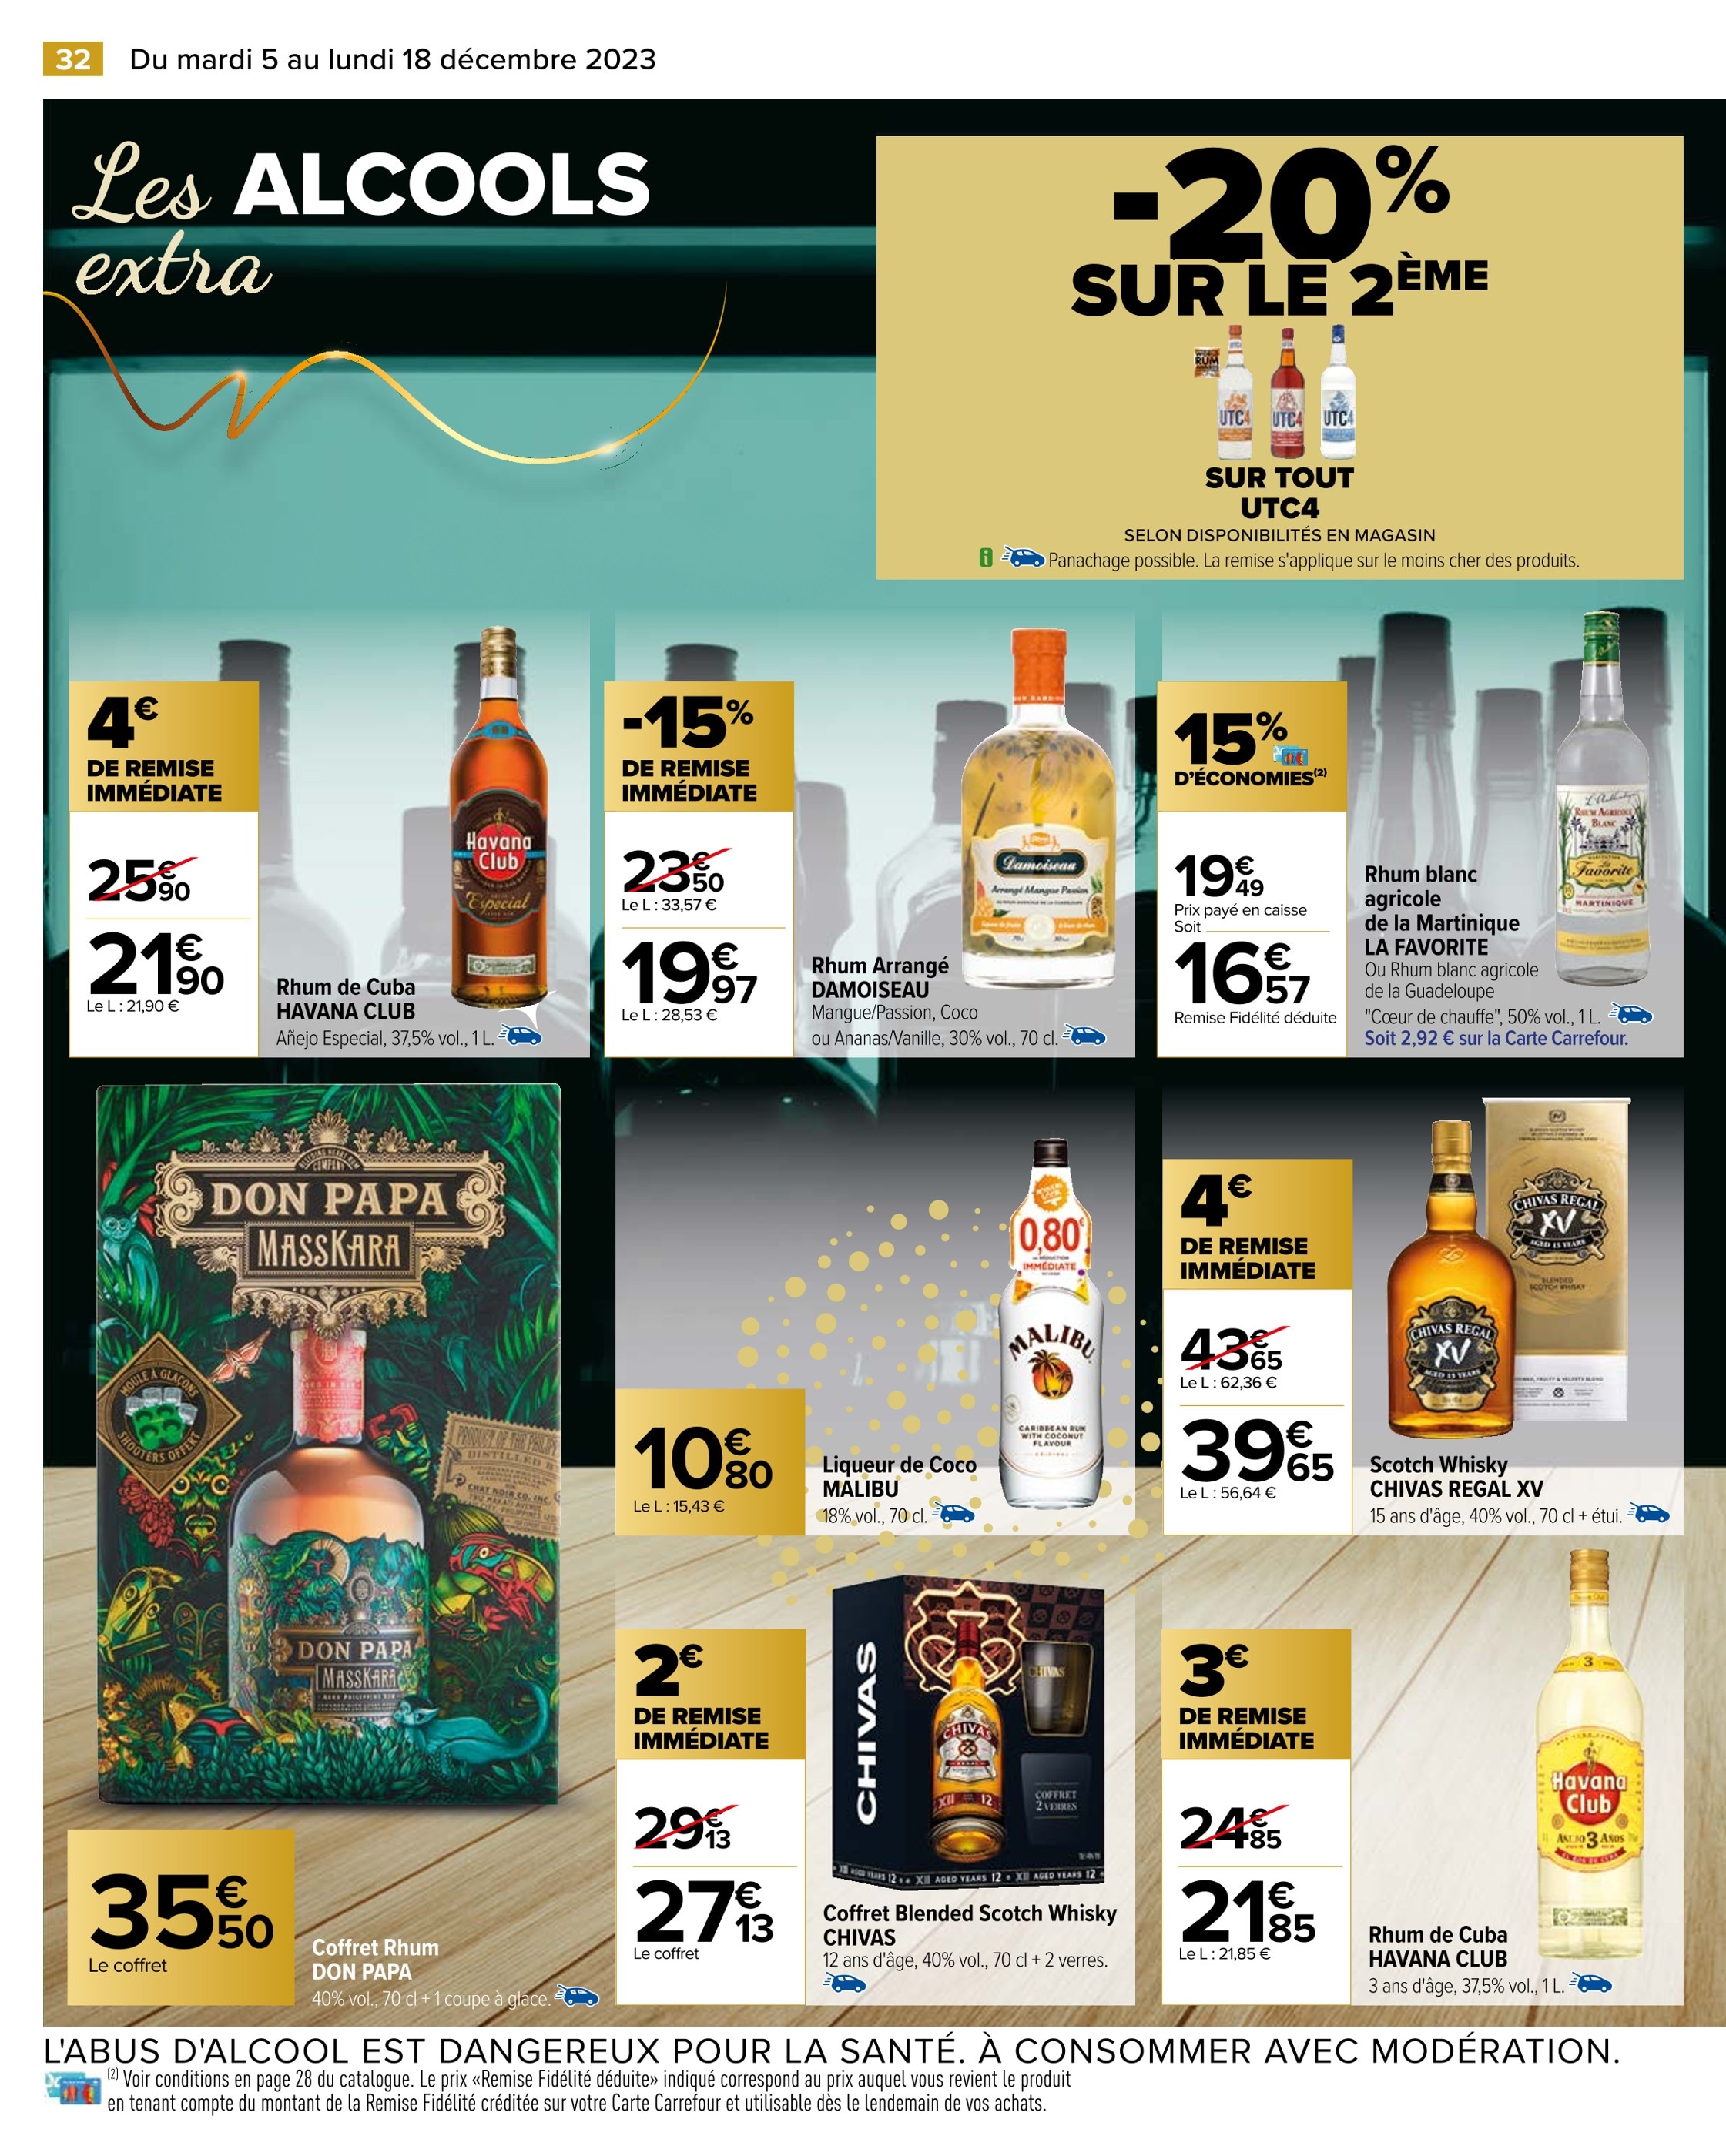 Promo Chivas coffret whisky 12 ans chez Auchan Supermarché